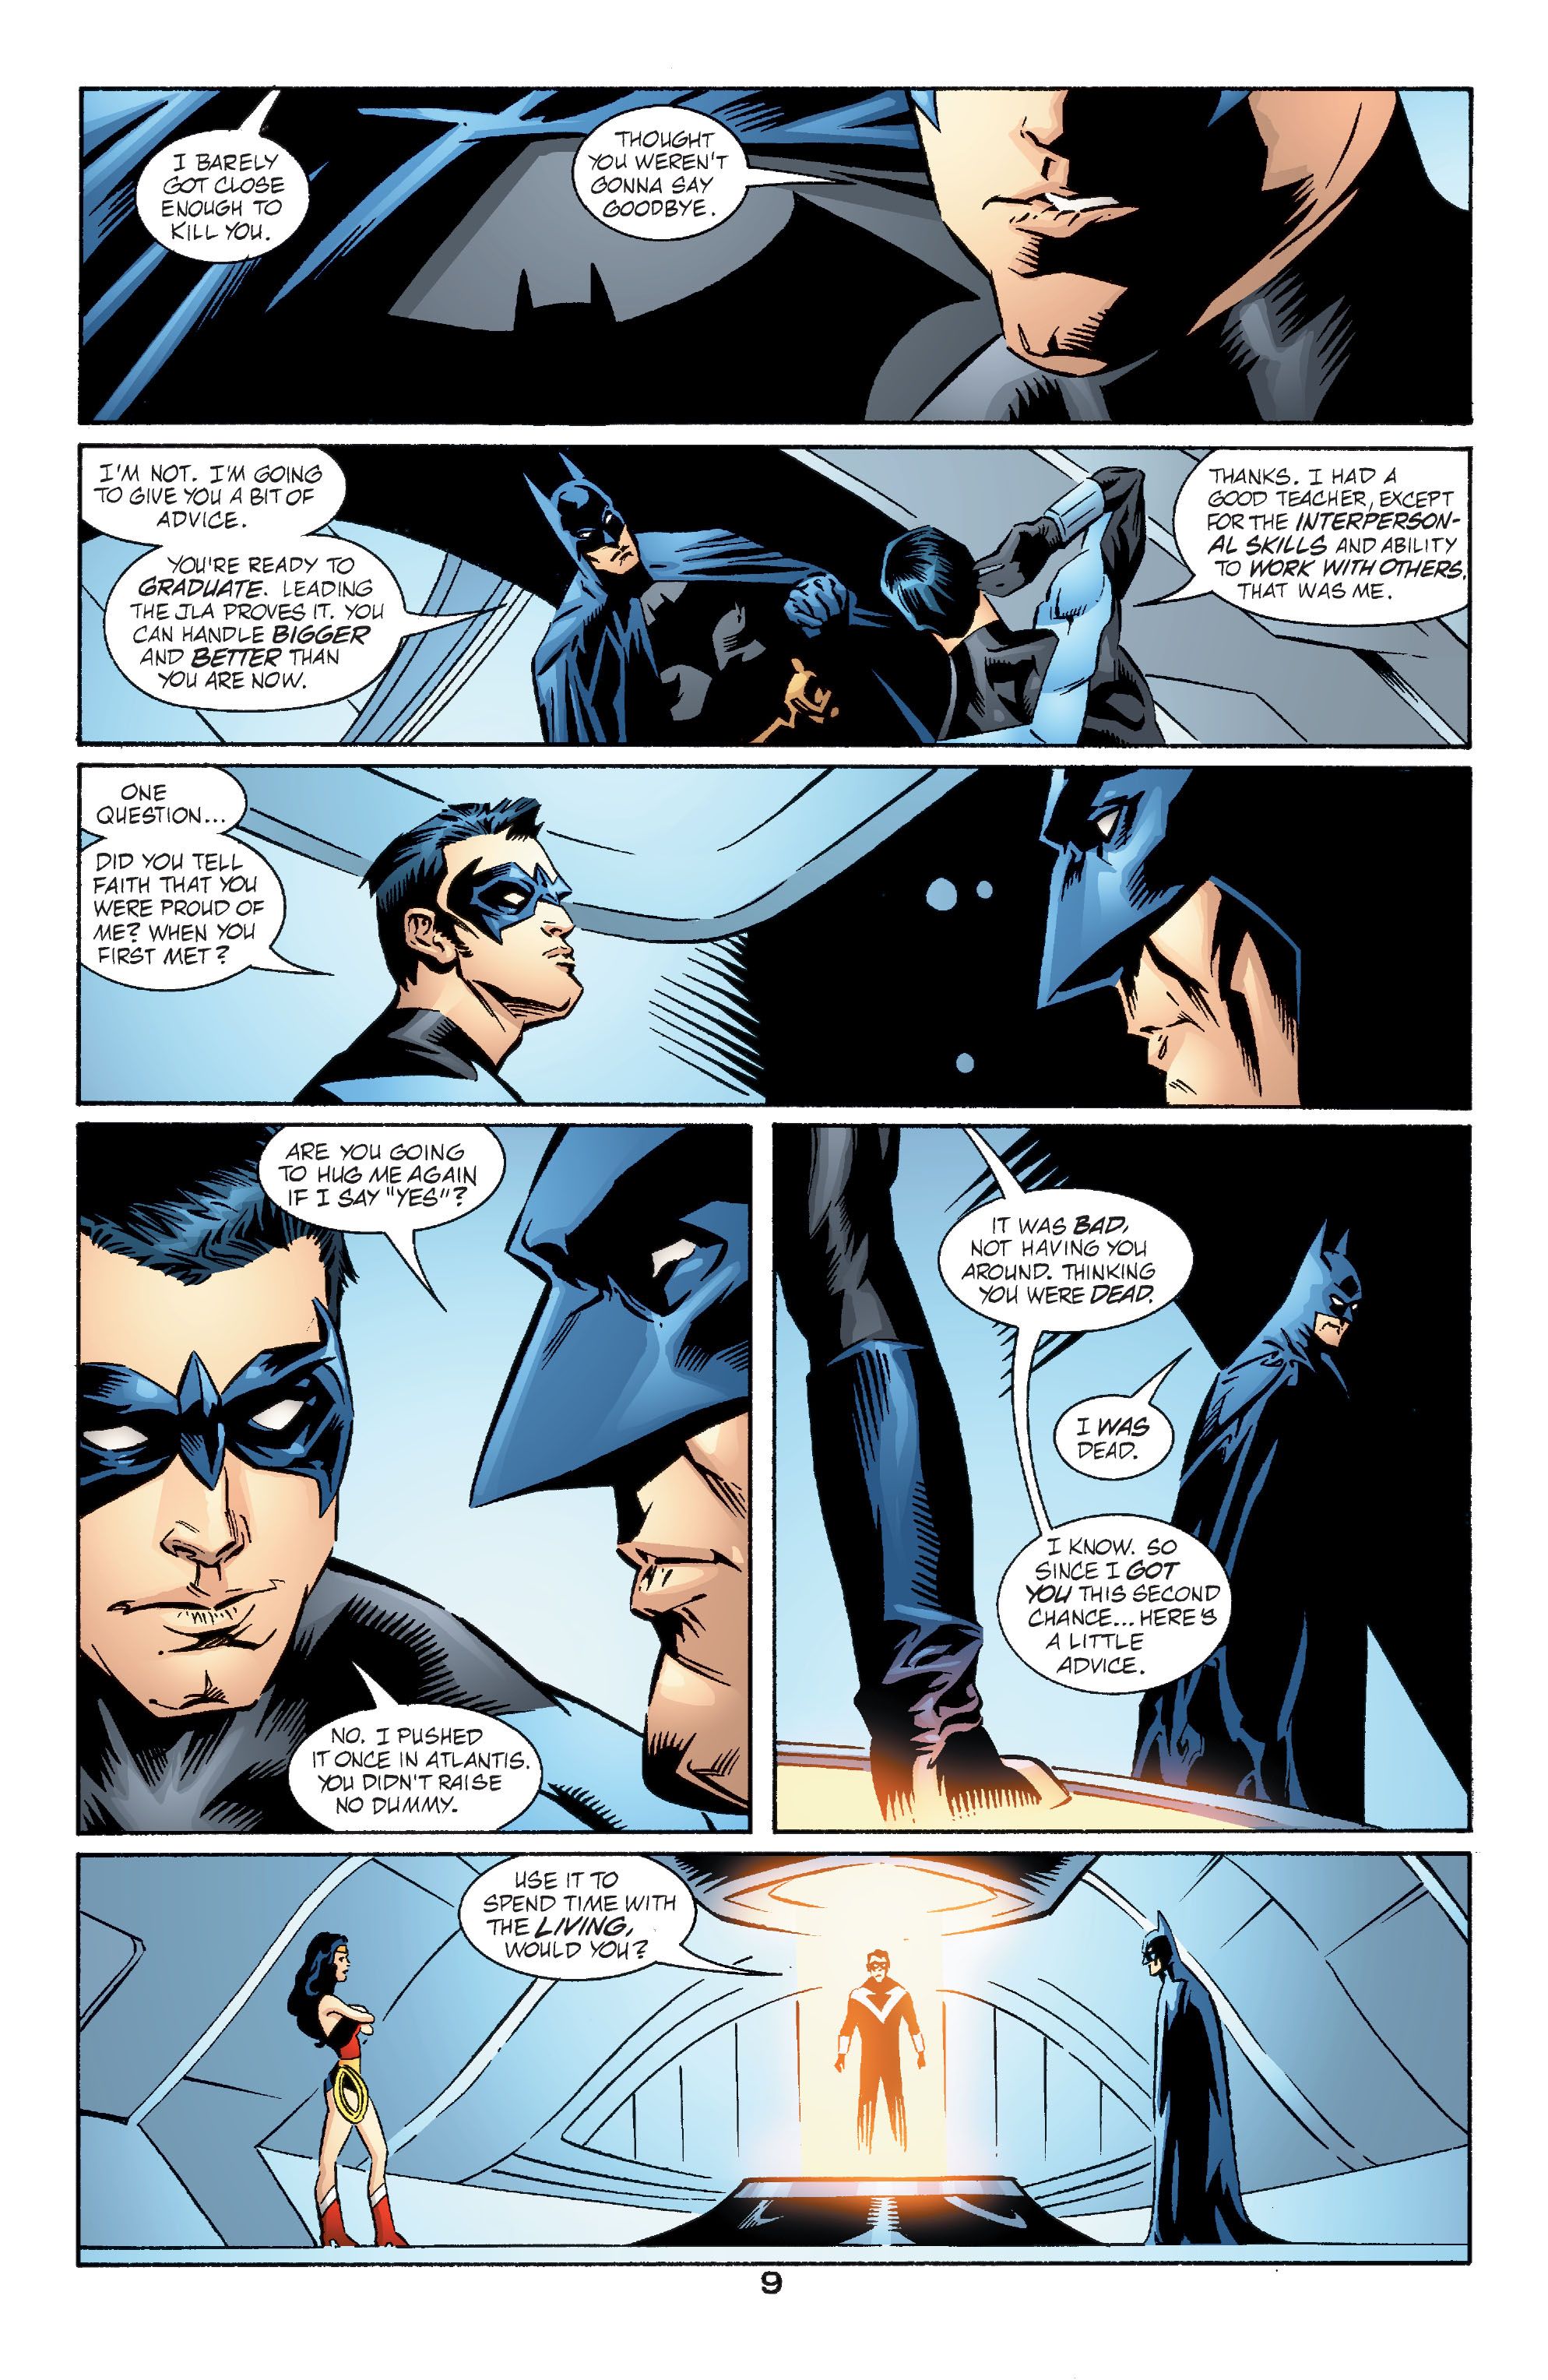 Nightwing opuszcza Ligę Sprawiedliwości